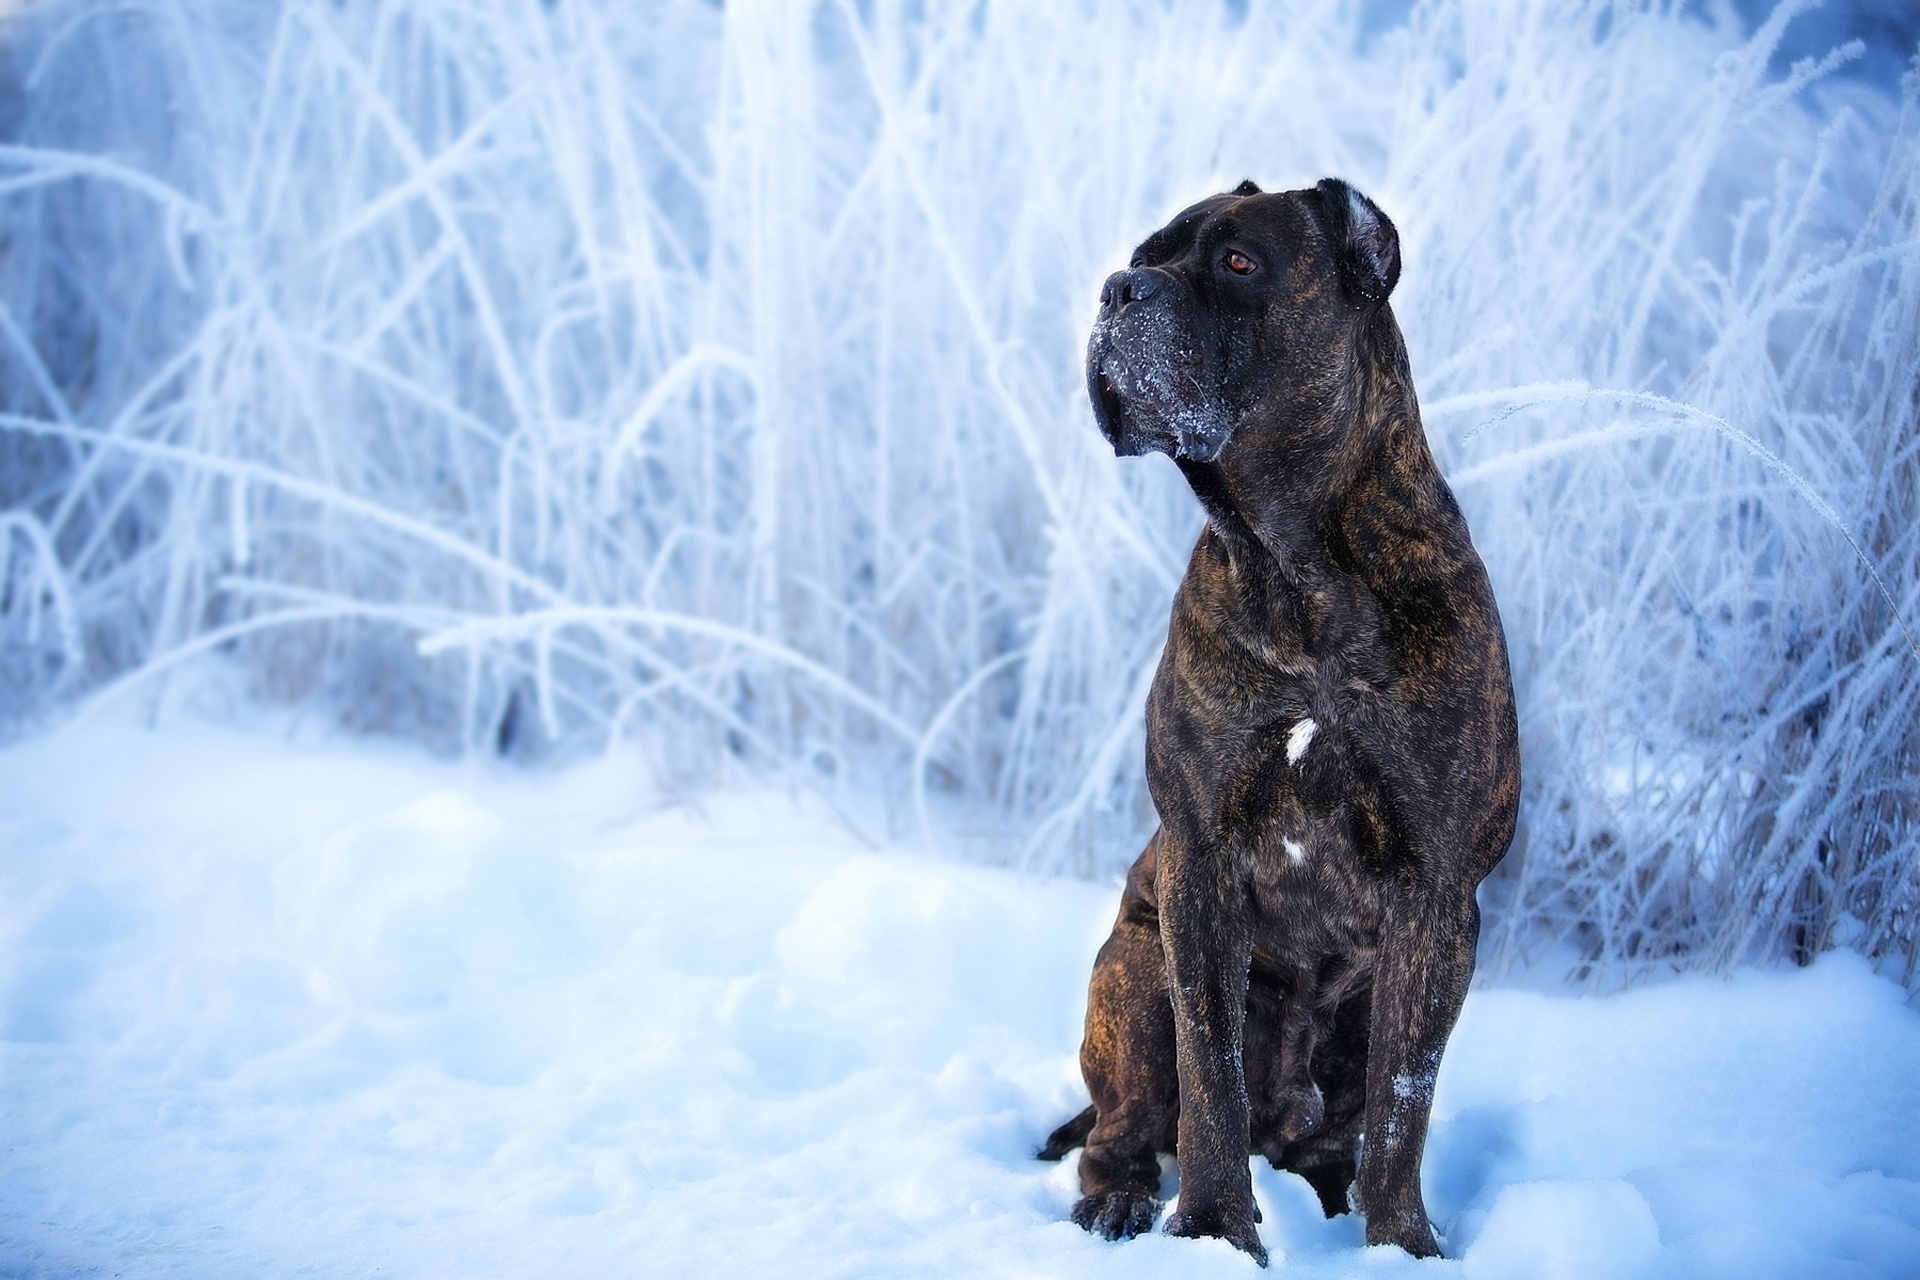 Cane Corso Dog Pet Snow Winter 1920x1280